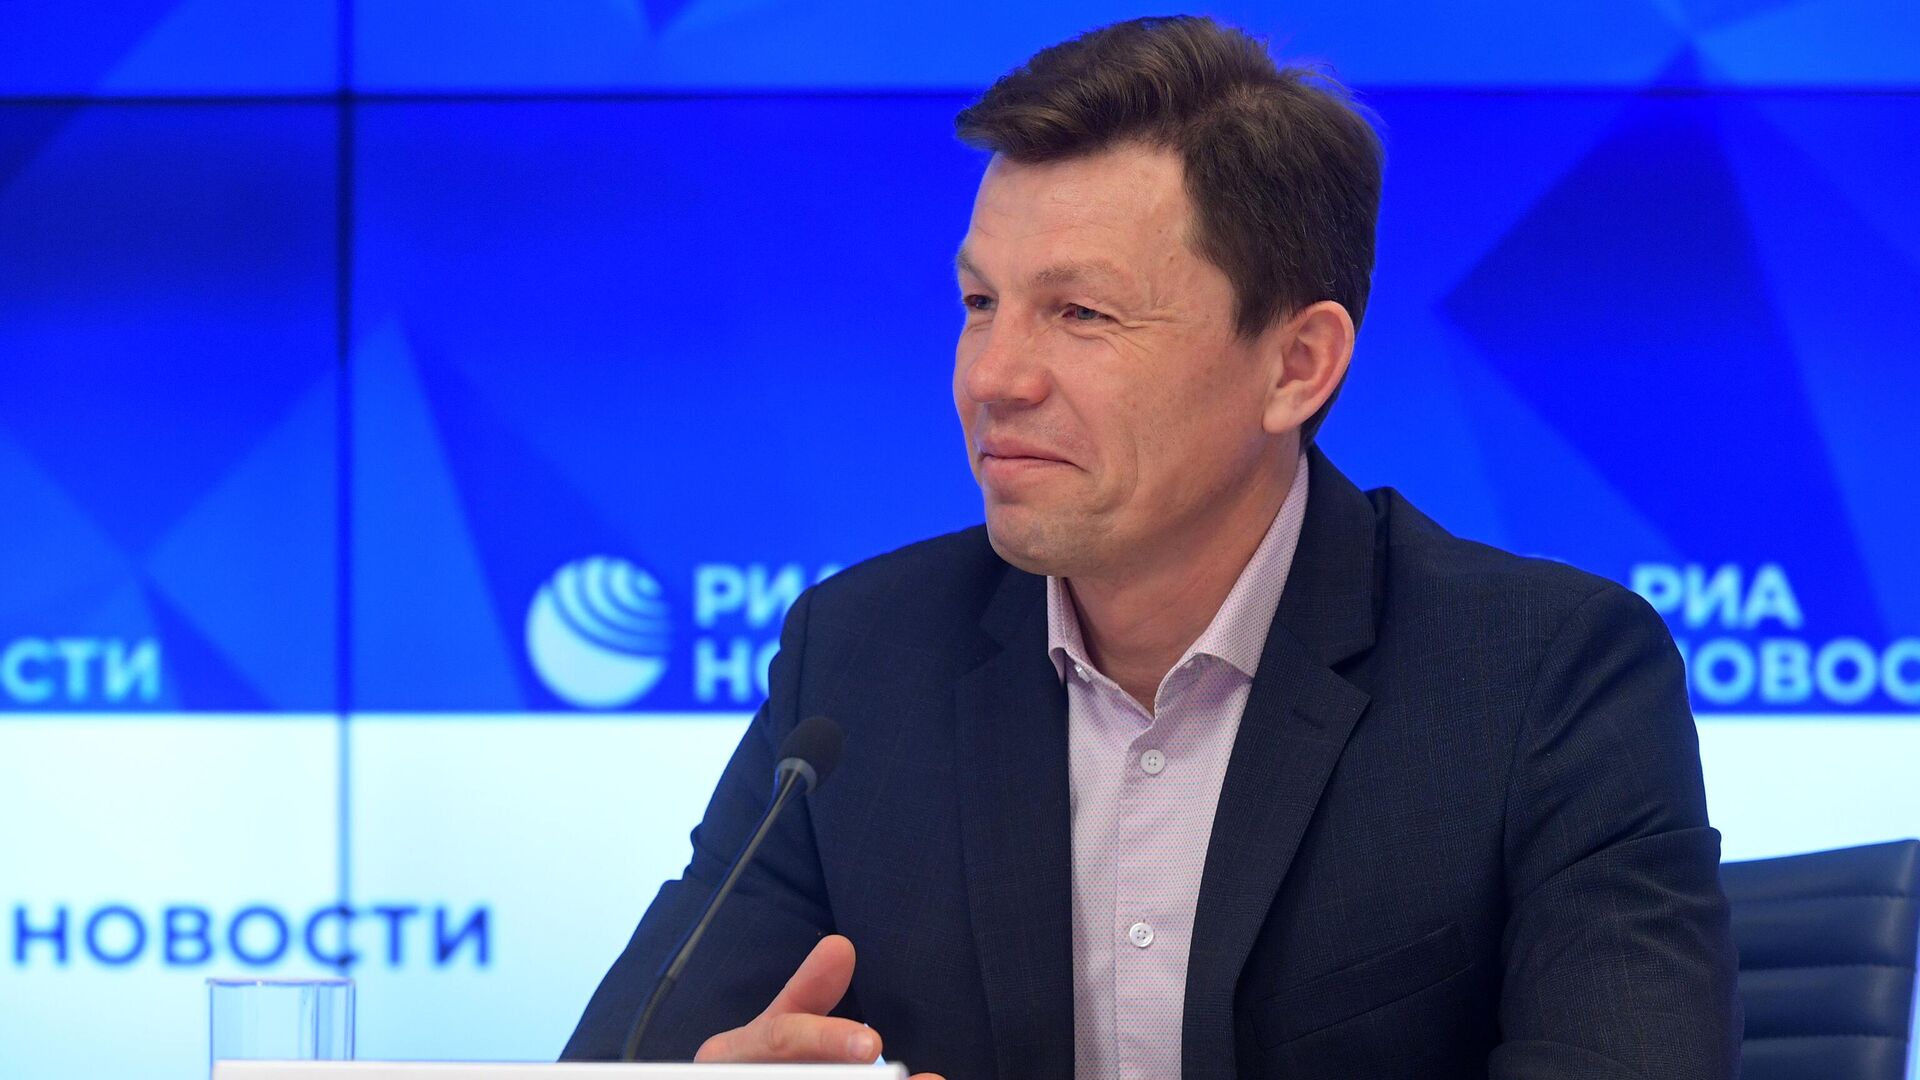 Нугманов: зарплата президента СБР Майгурова составляет 500 тысяч рублей в месяц